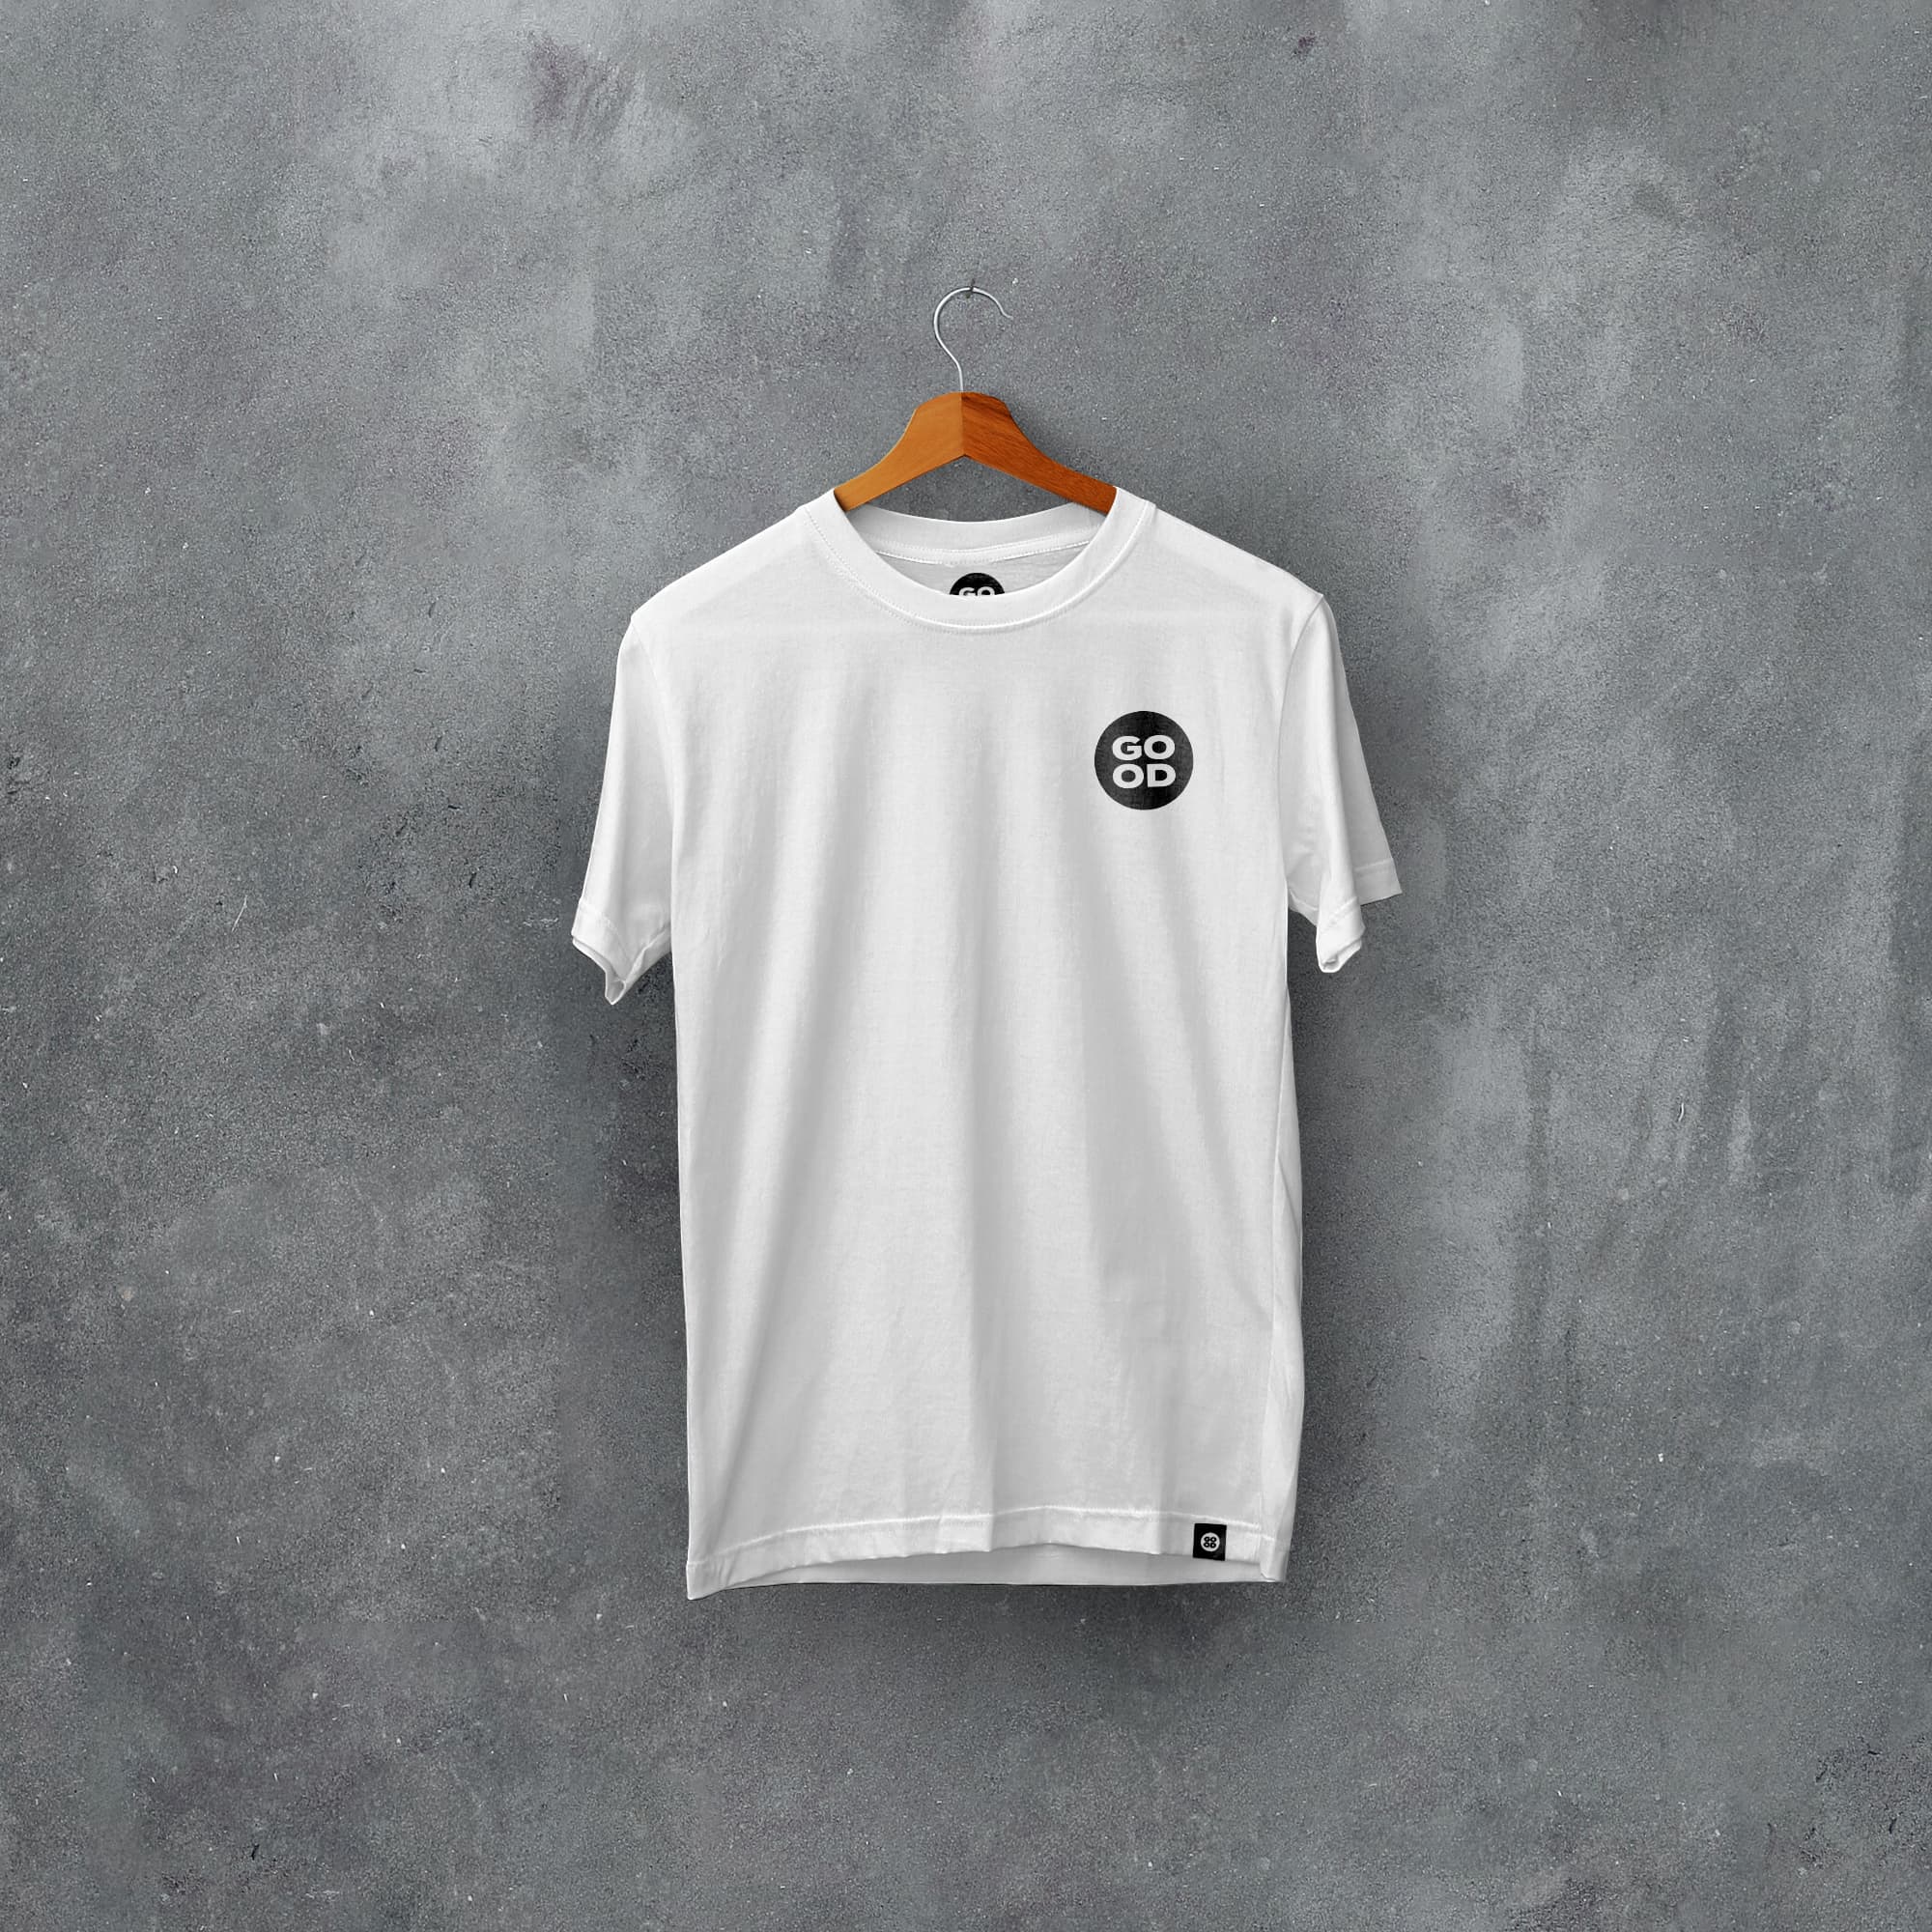 Newport Classic Kits Football T-Shirt